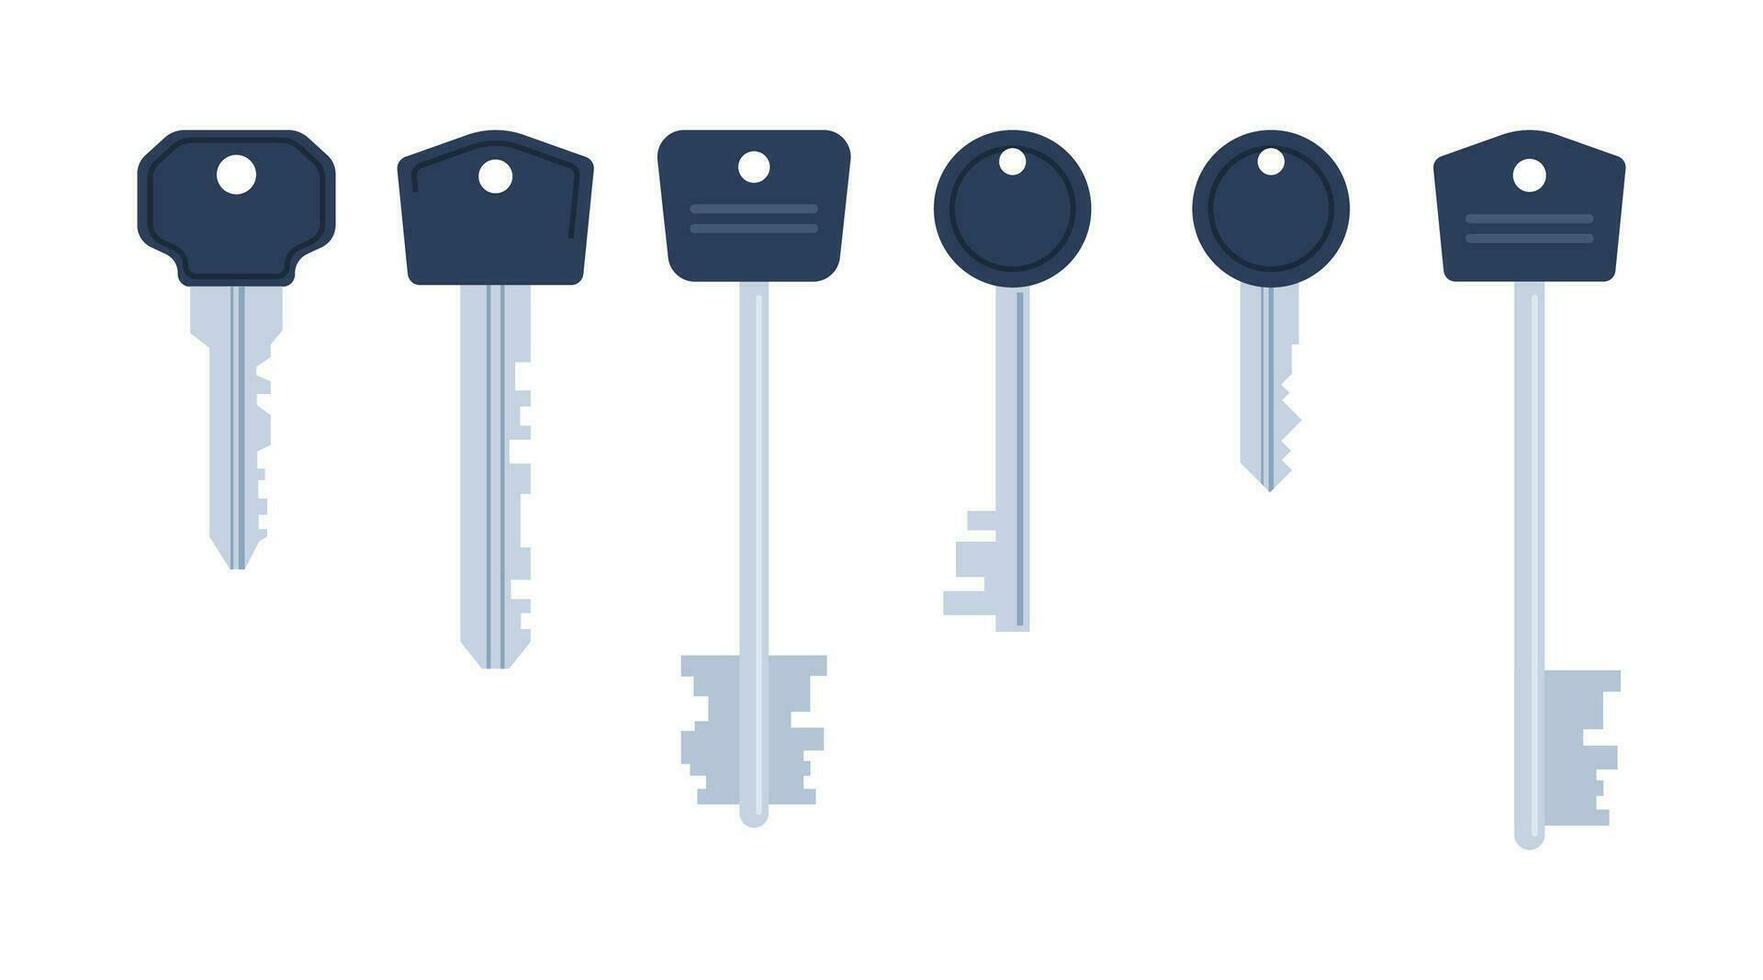 ensemble de divers maison clés. différent porte clés. Accueil sécurité. vecteur illustration.